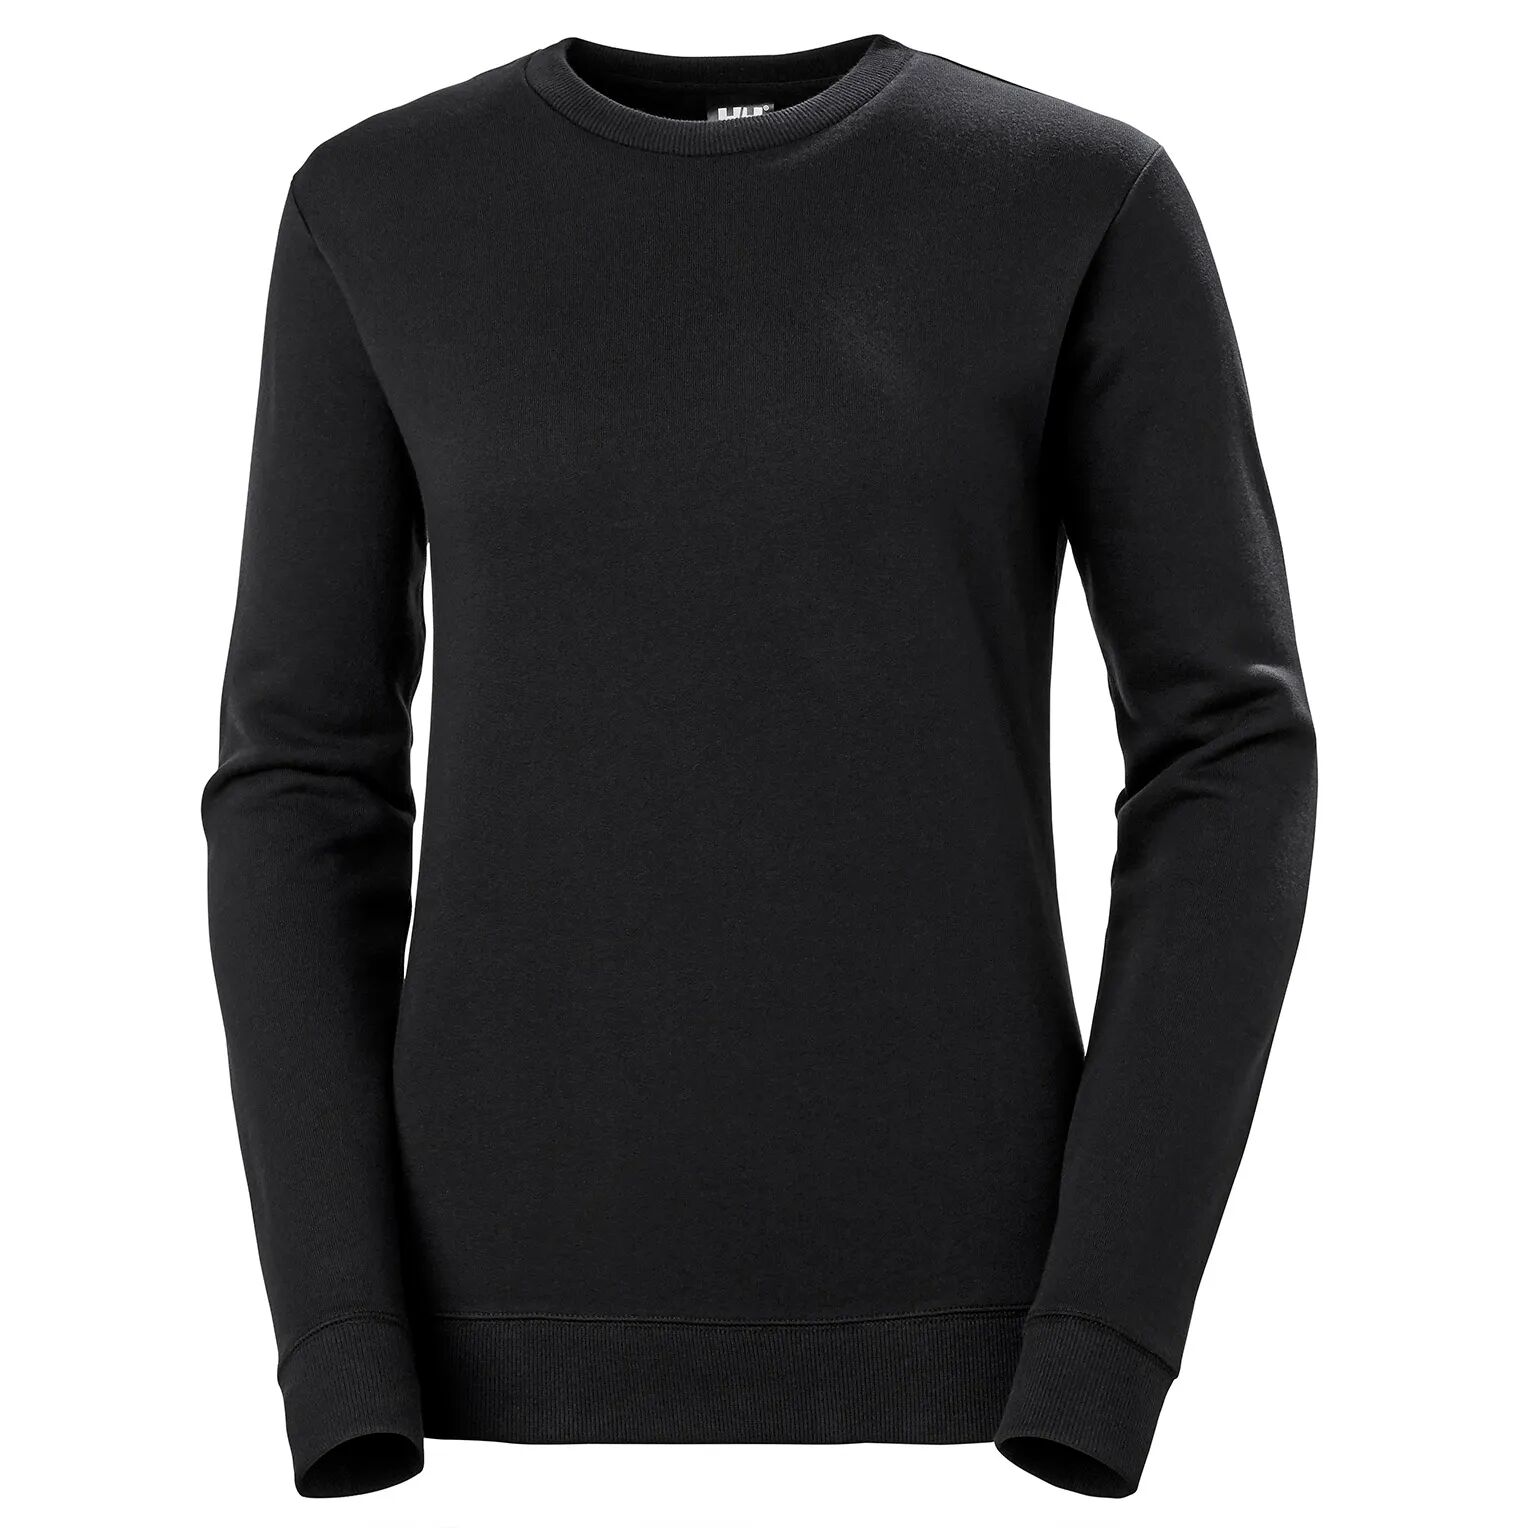 HH Workwear Helly Hansen WorkwearWomen’s Manchester Cotton Sweater Black XS